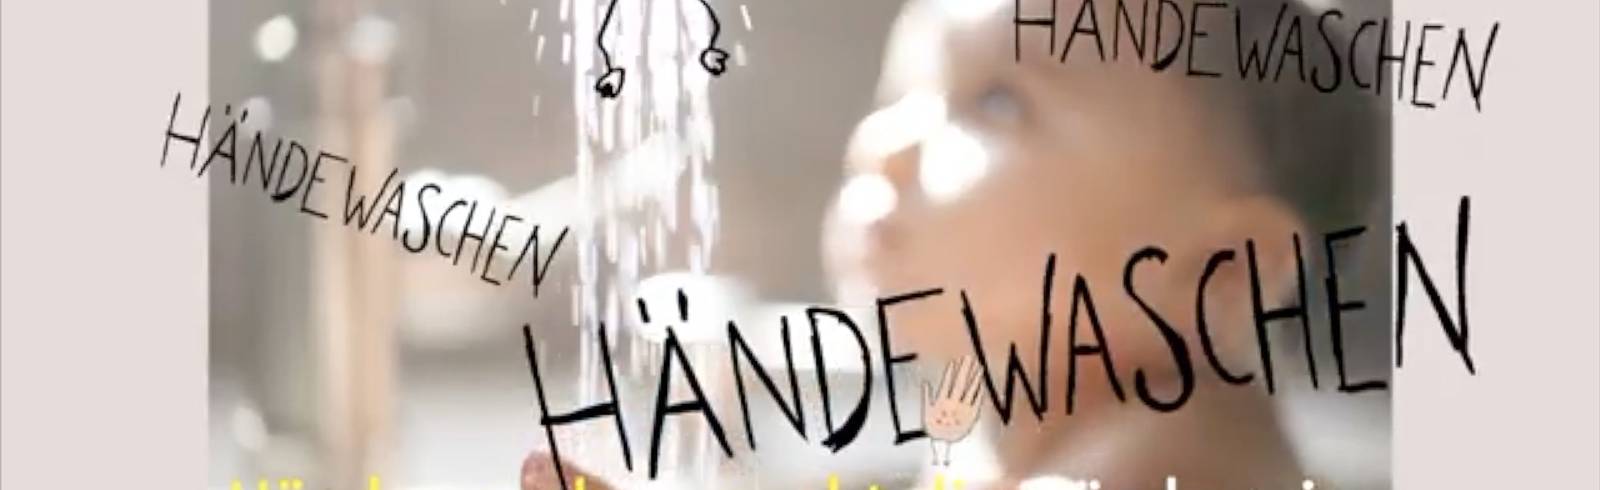 Händewasch-Song: Mit Ohrwurm gegen Corona